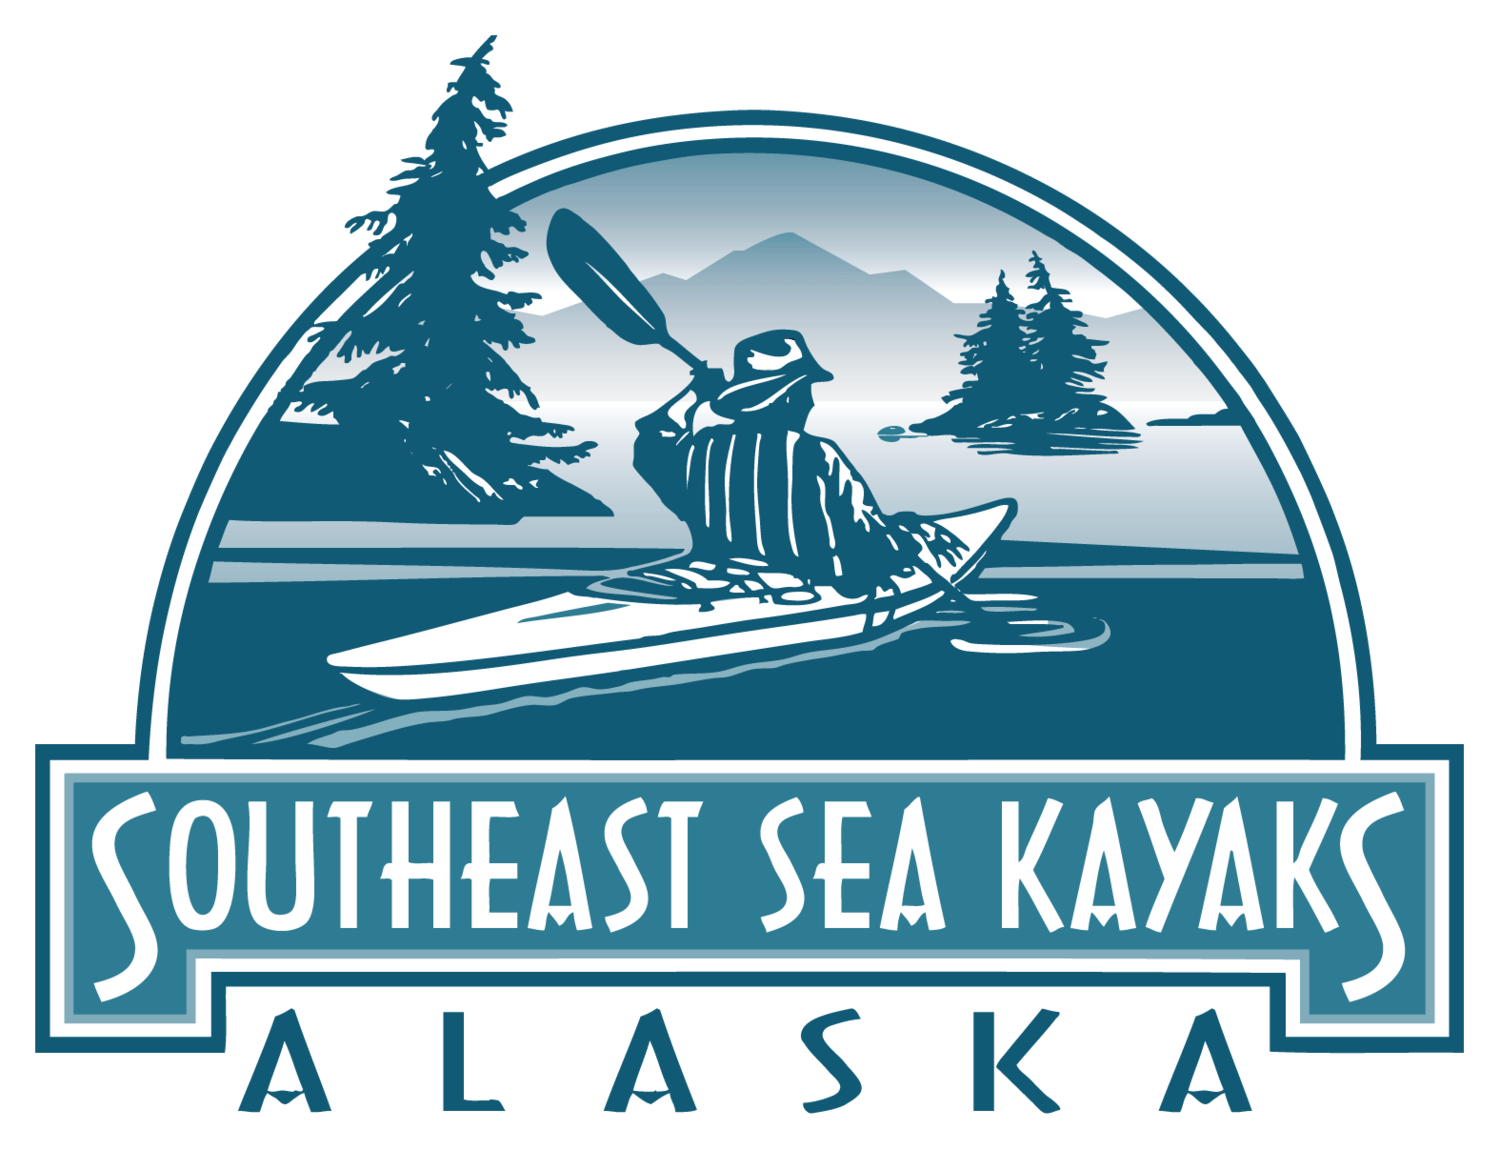 Kayaking Logo - Southeast Sea Kayaks